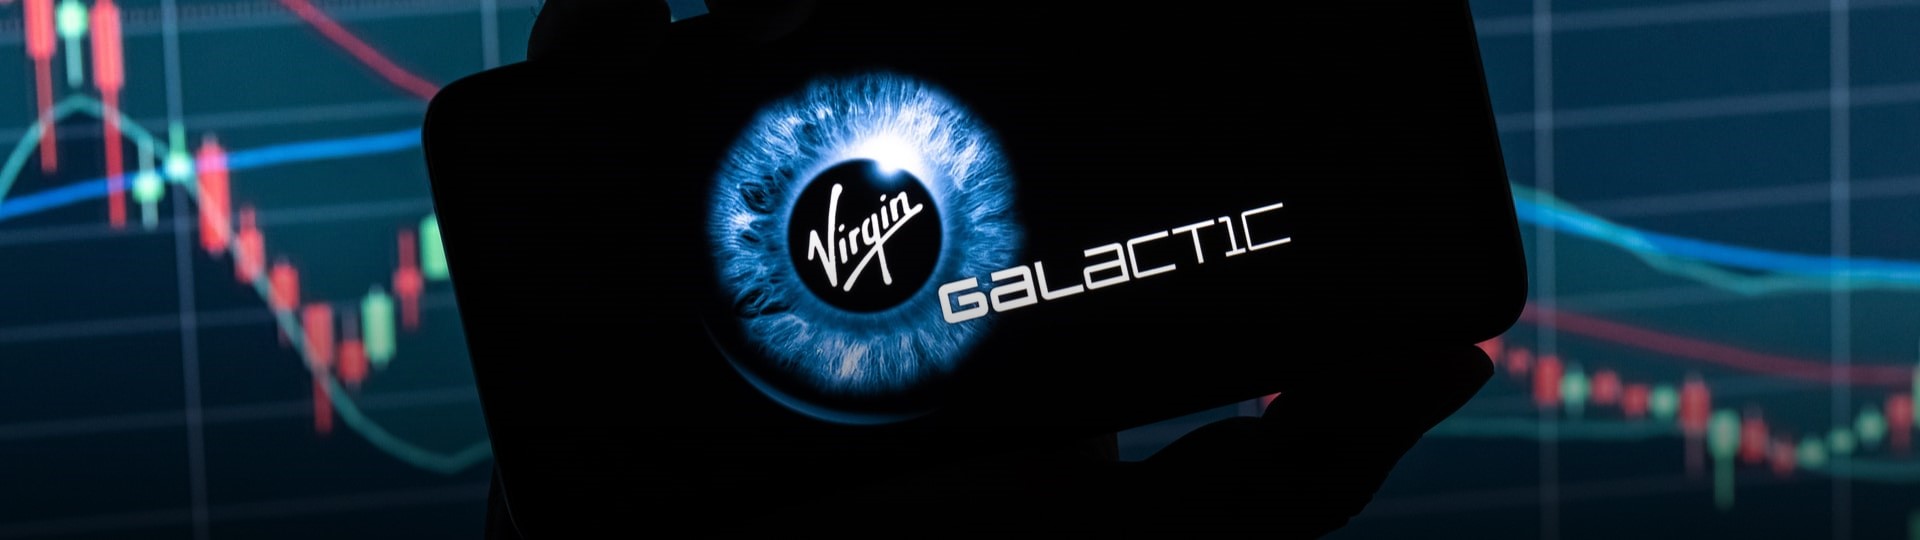 Miliardář Branson prodal za 300 milionů USD část podílu ve Virgin Galactic